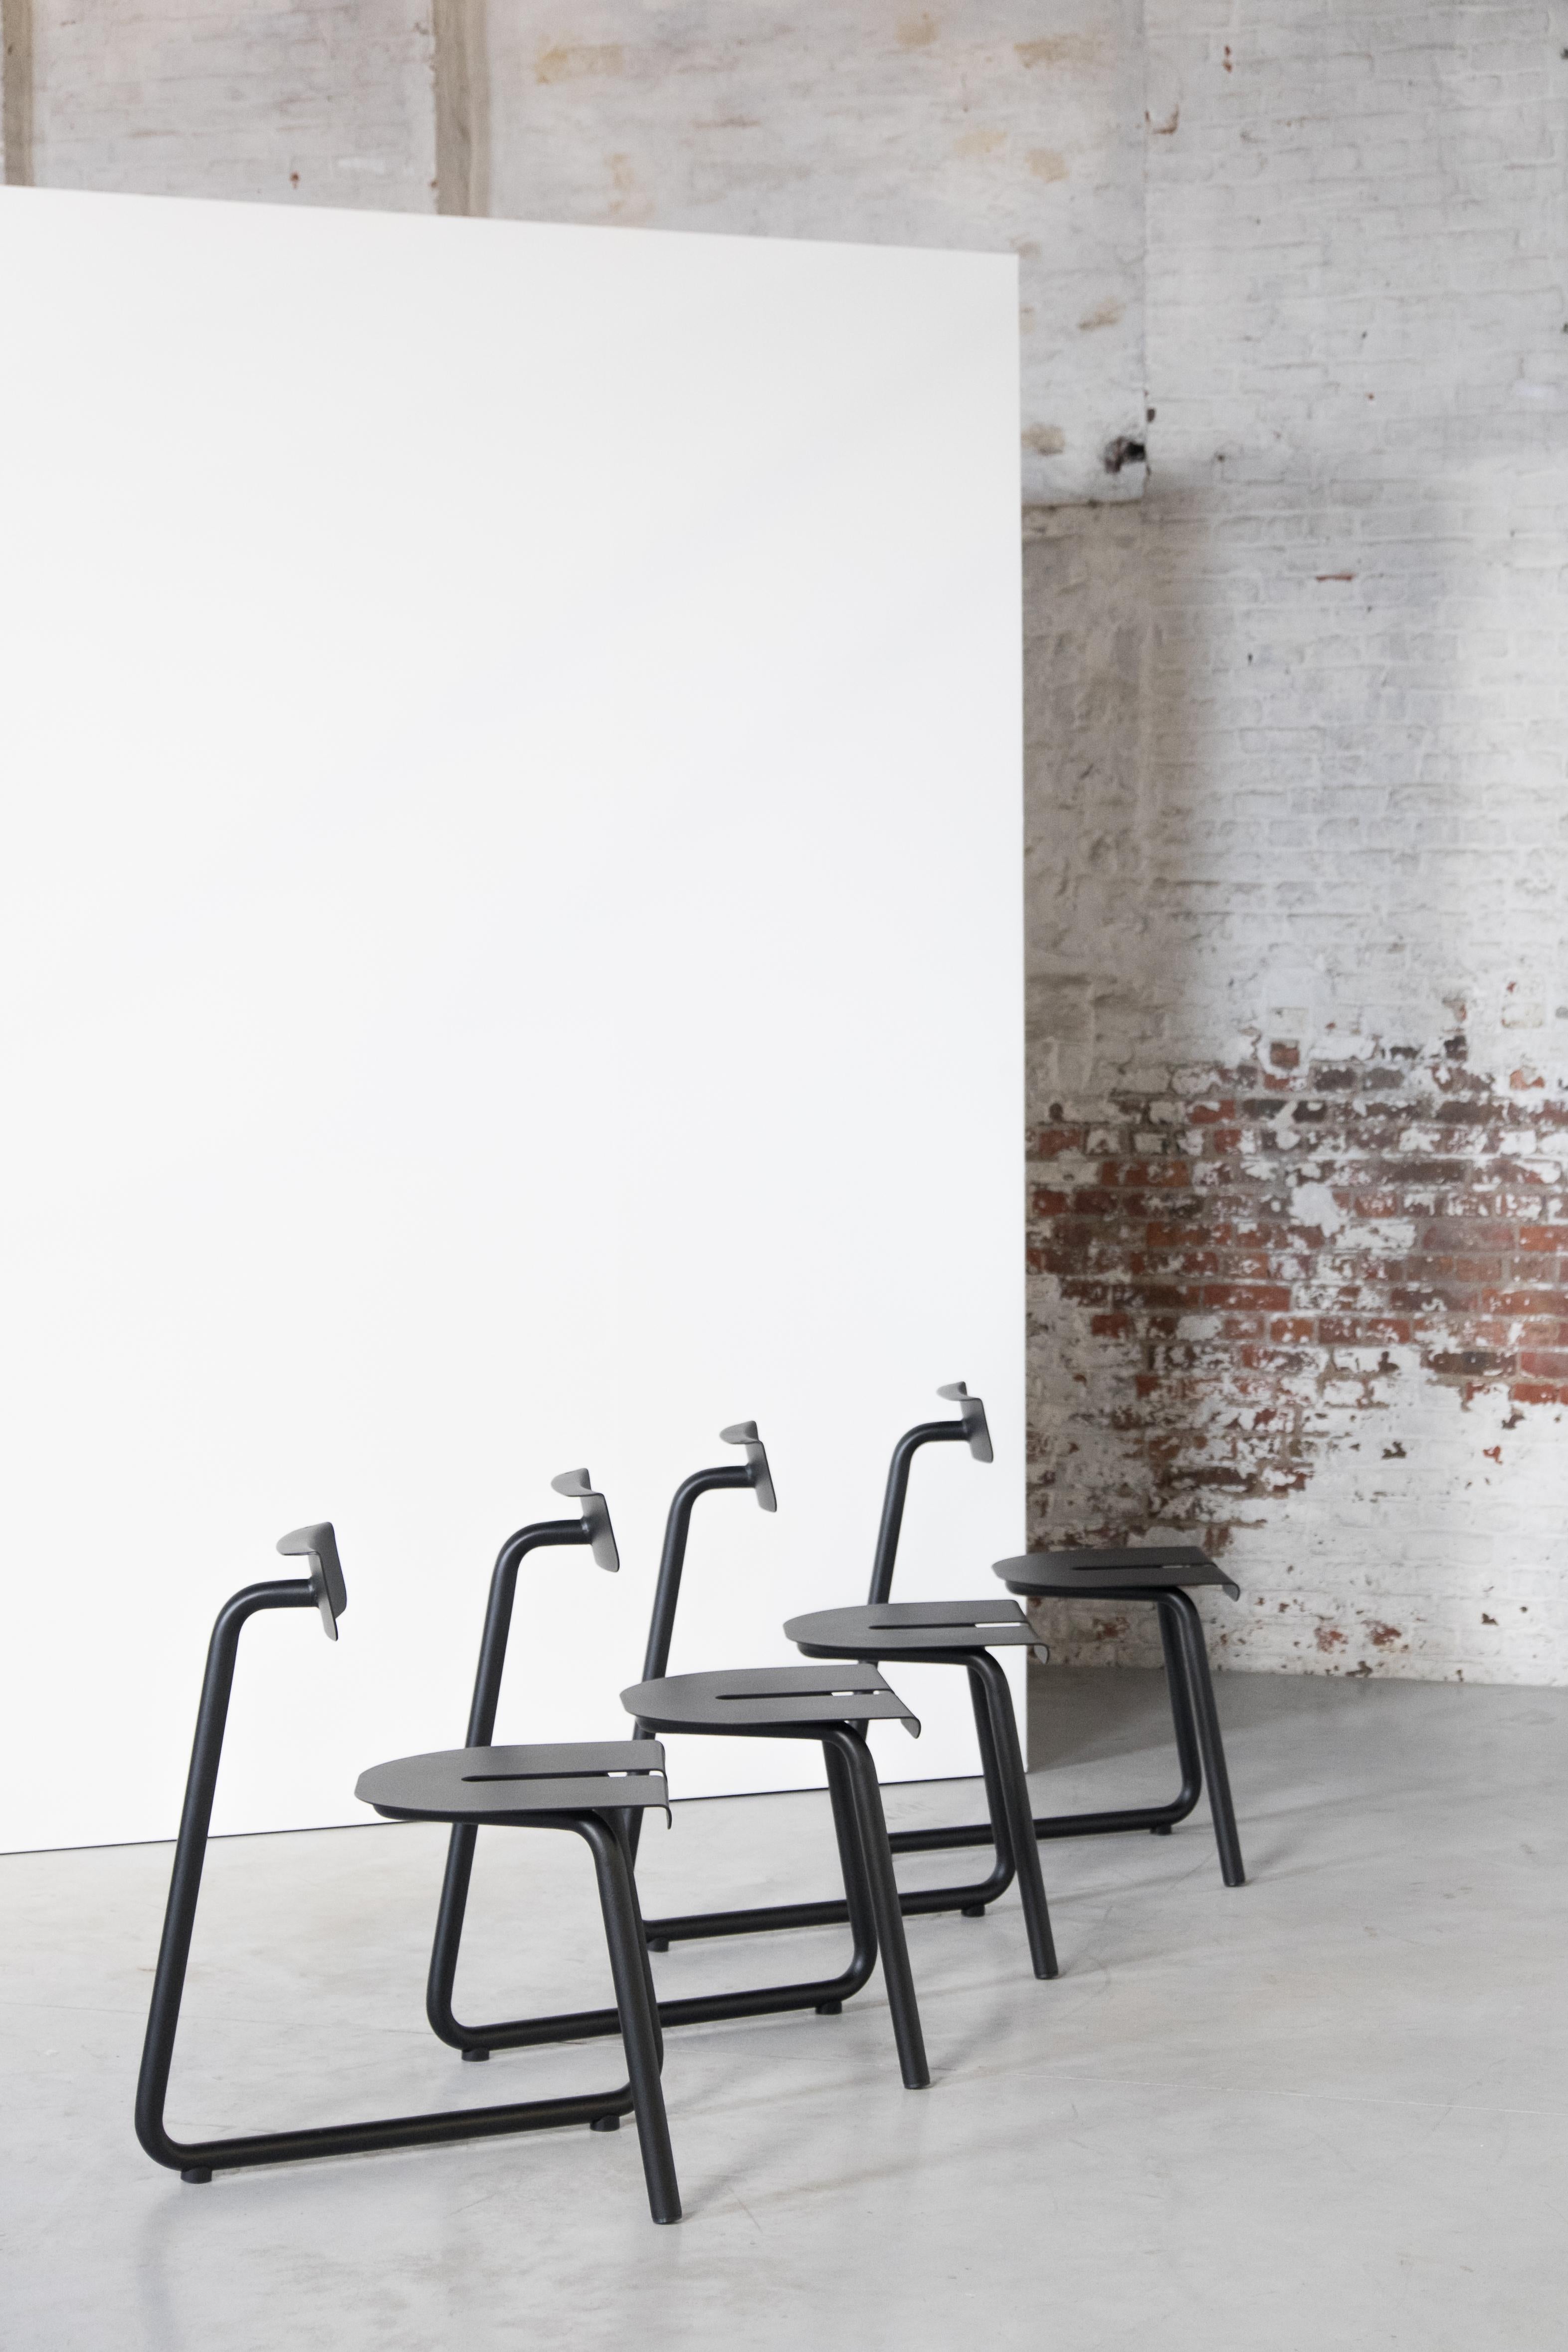 Ensemble de 4 chaises noires SPC de l'Atelier Thomas Serruys.
Dimensions : D65 x W43 x H46.
Matériaux : acier, revêtement en poudre.

Chaise en acier constituée d'un tube façonné avec une assise et un dossier en tôle d'acier. Revêtement en